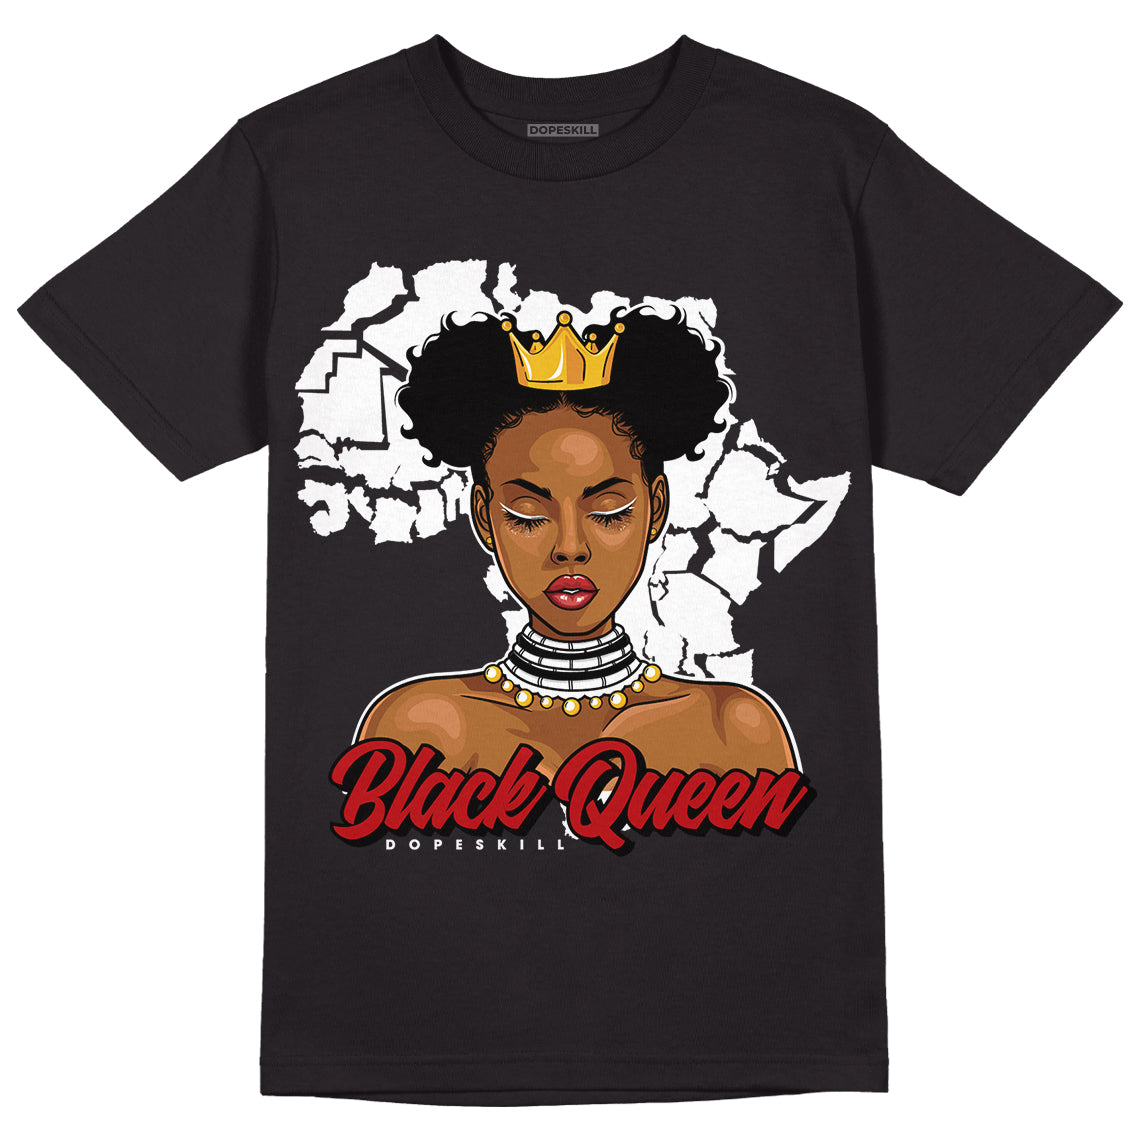 Playoffs 13s DopeSkill T-Shirt Black Queen Graphic - Black